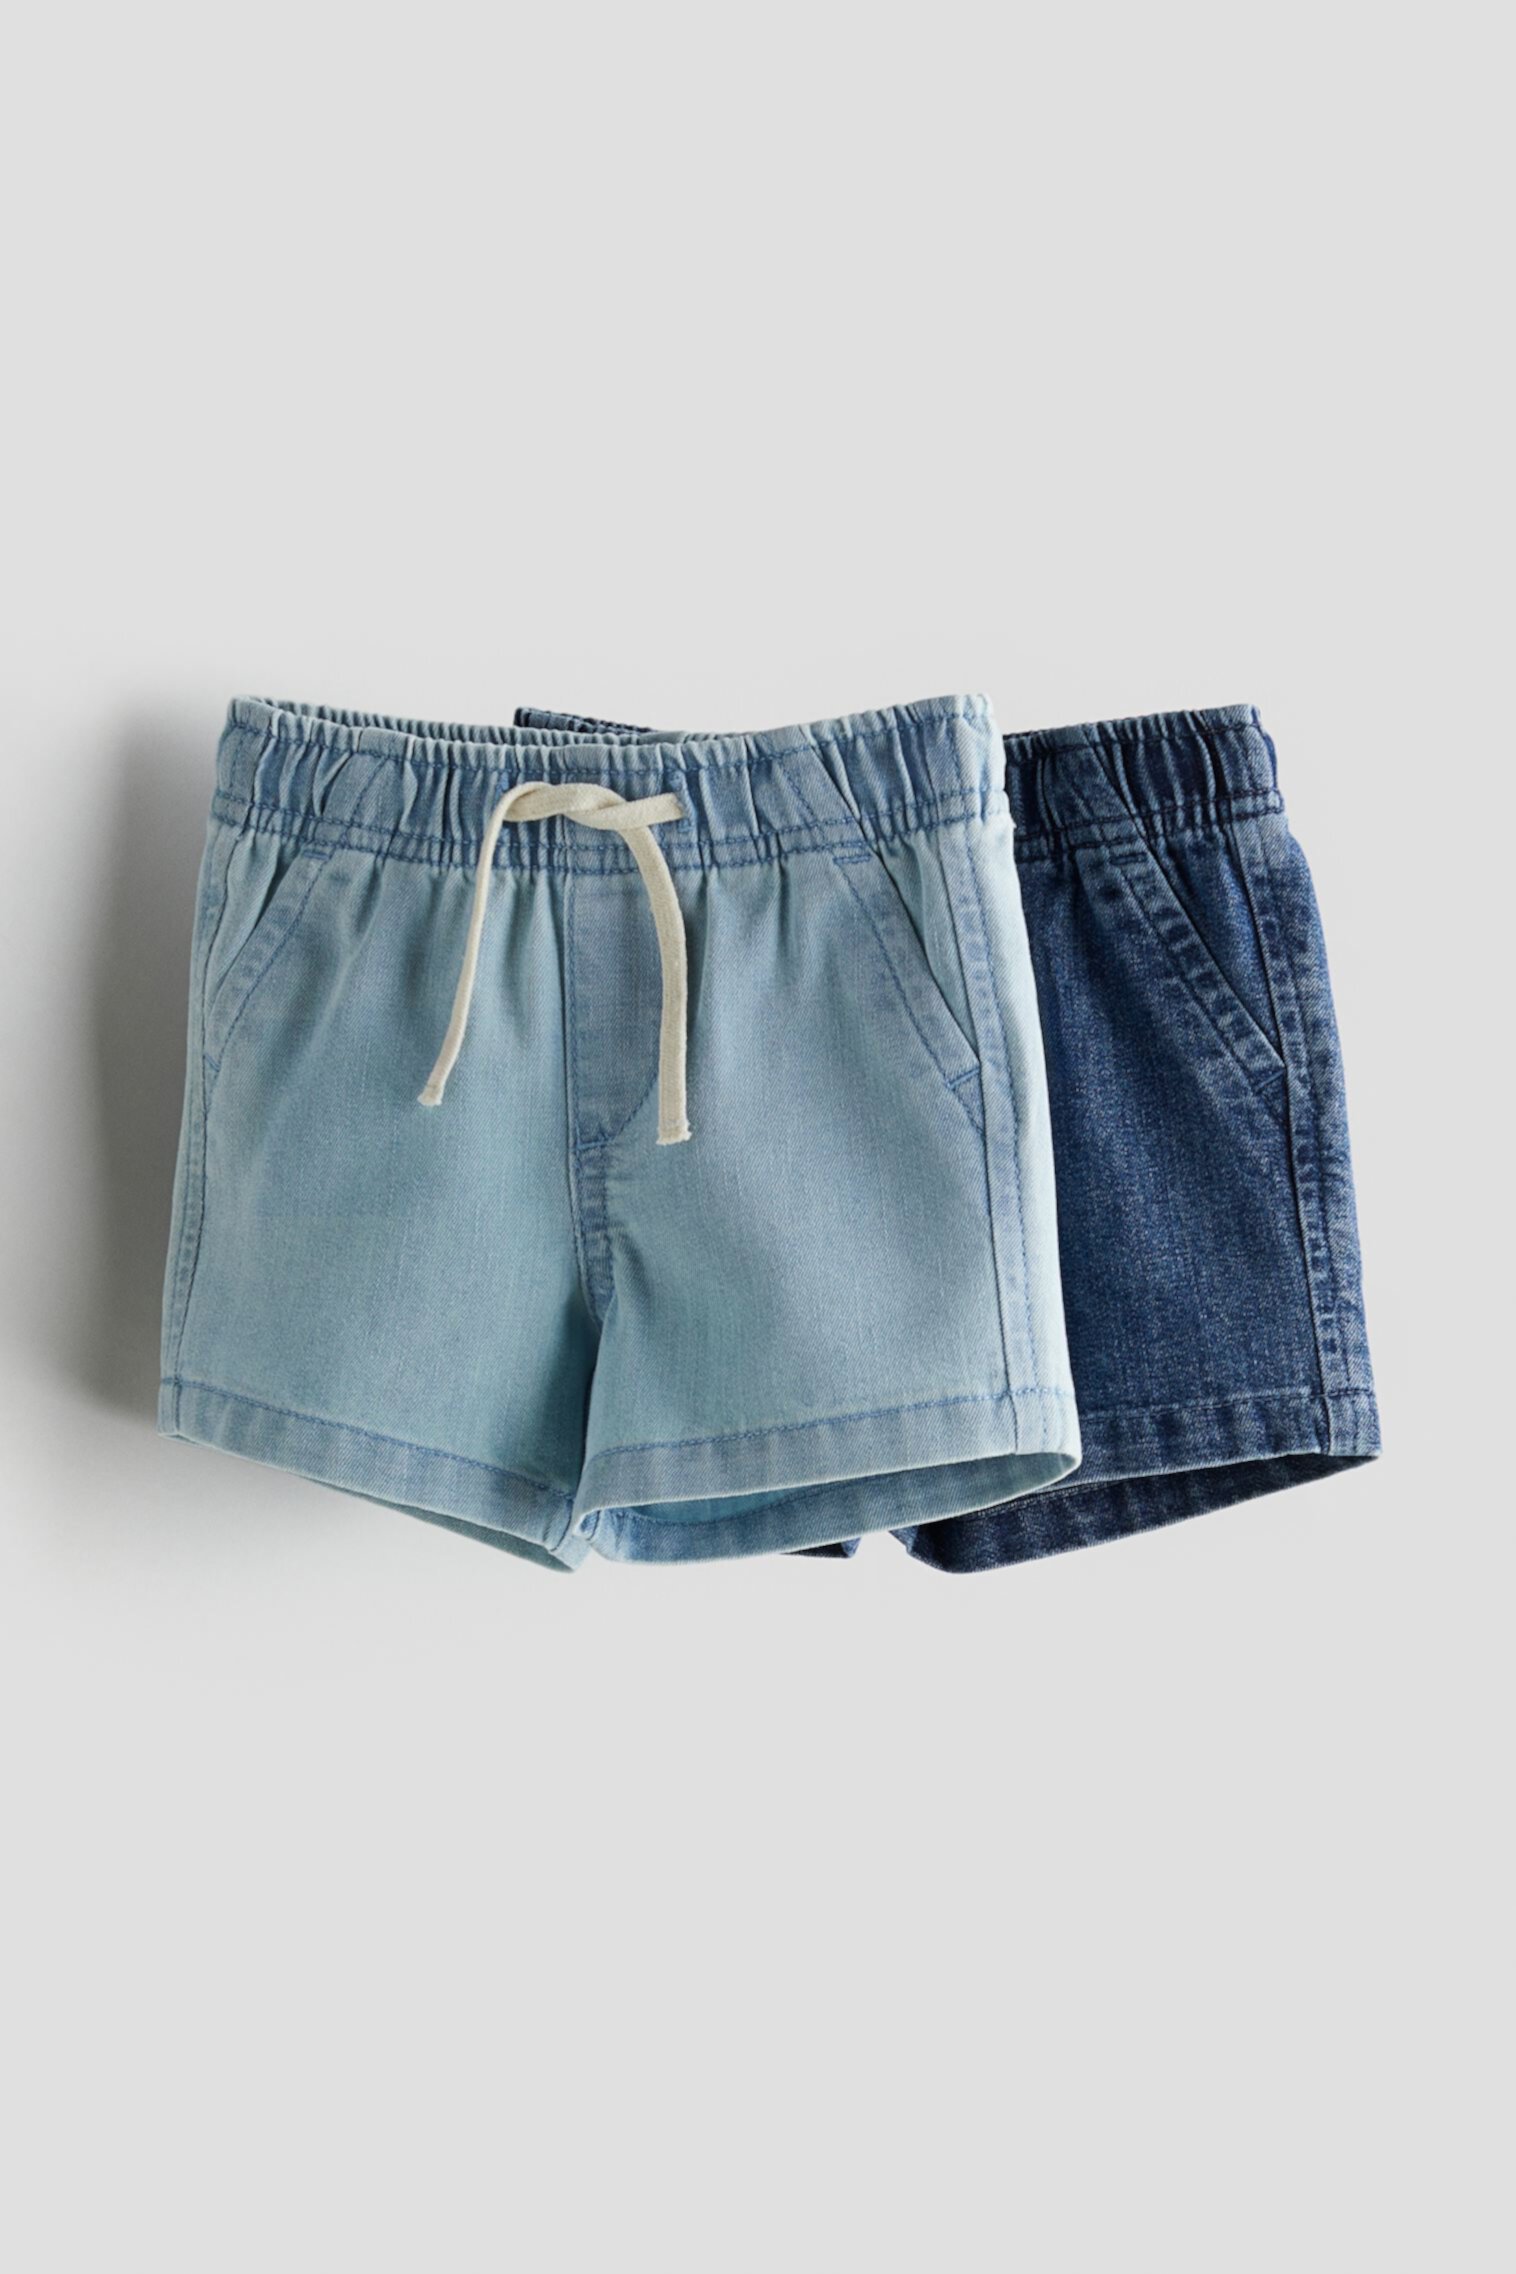 2 пары джинсовых шорт H&M